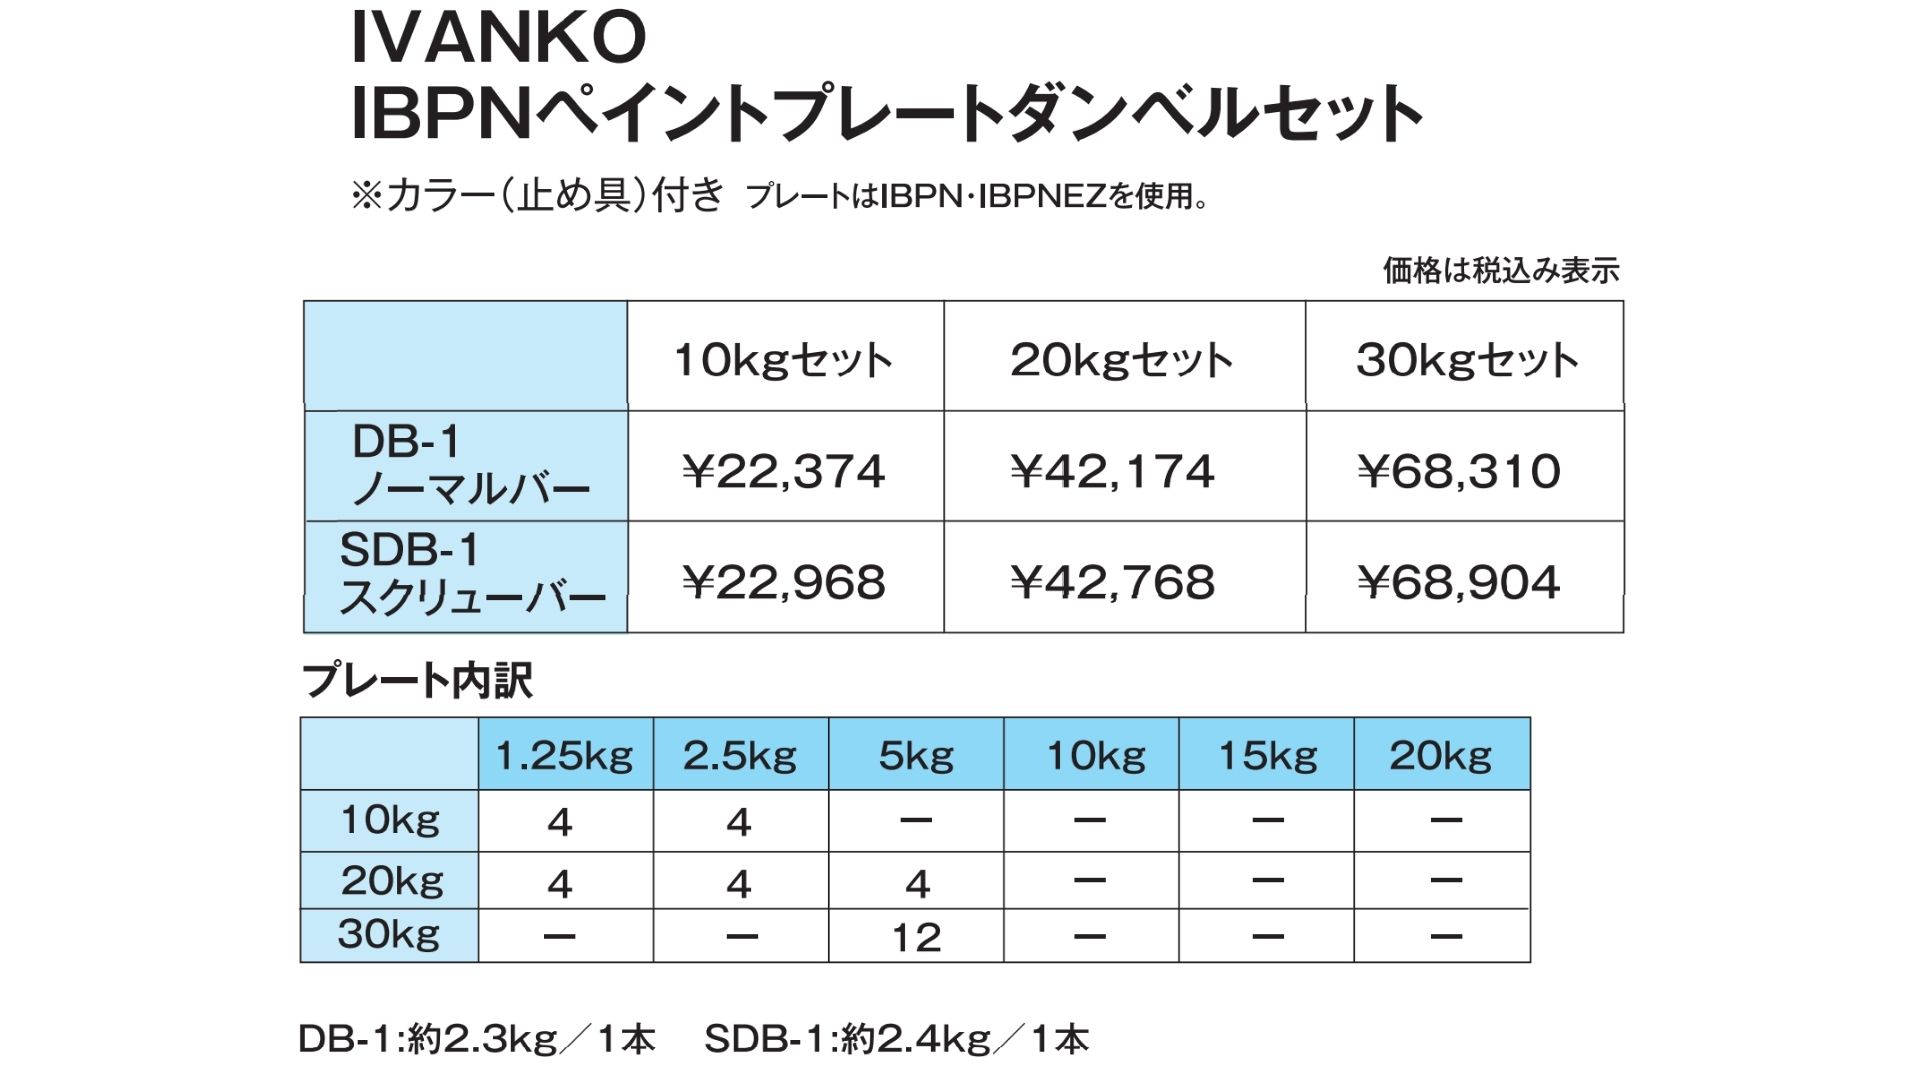 IVANKO 28mmバーベルセット選び方のコツ